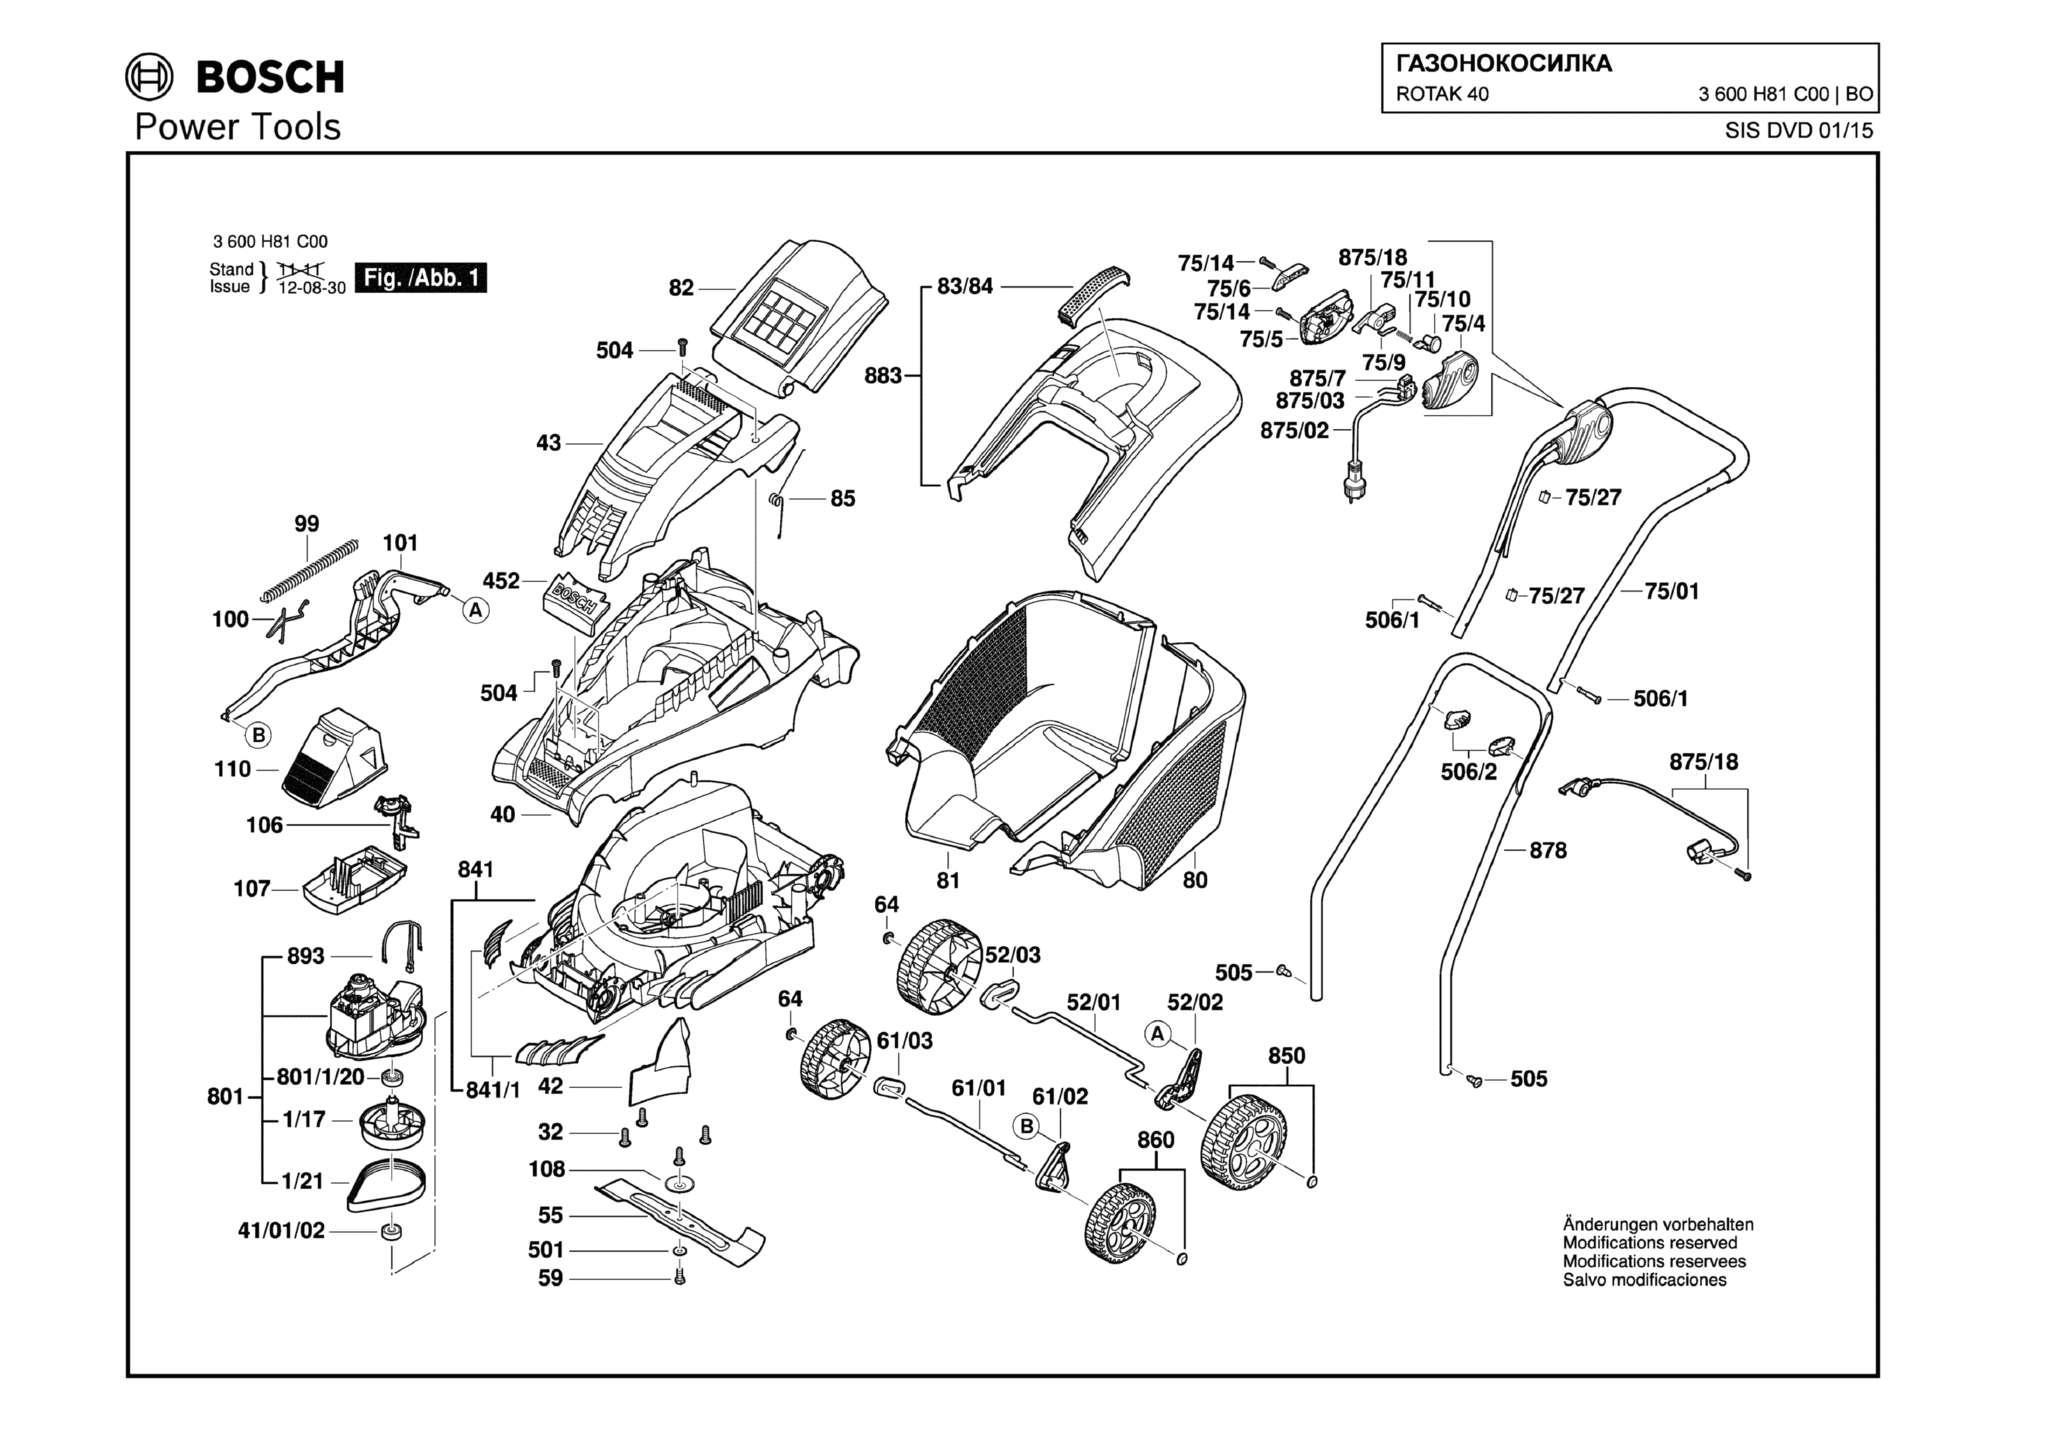 Запчасти, схема и деталировка Bosch ROTAK 40 (ТИП 3600H81C00)